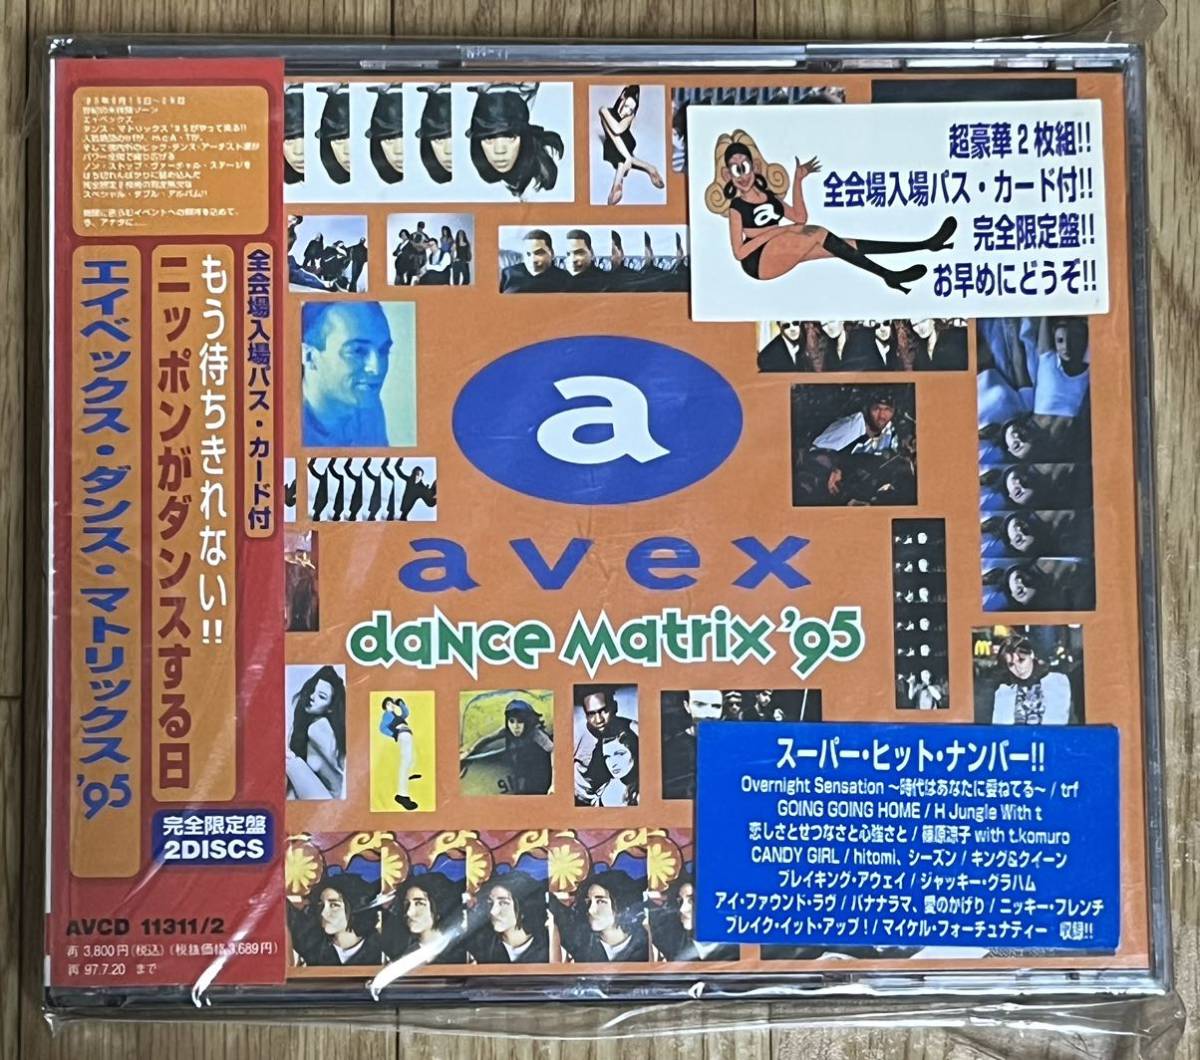 avex dance matrix '95 エイベックス・ダンス・マトリックス '95 完全限定盤2CD パス付の画像1